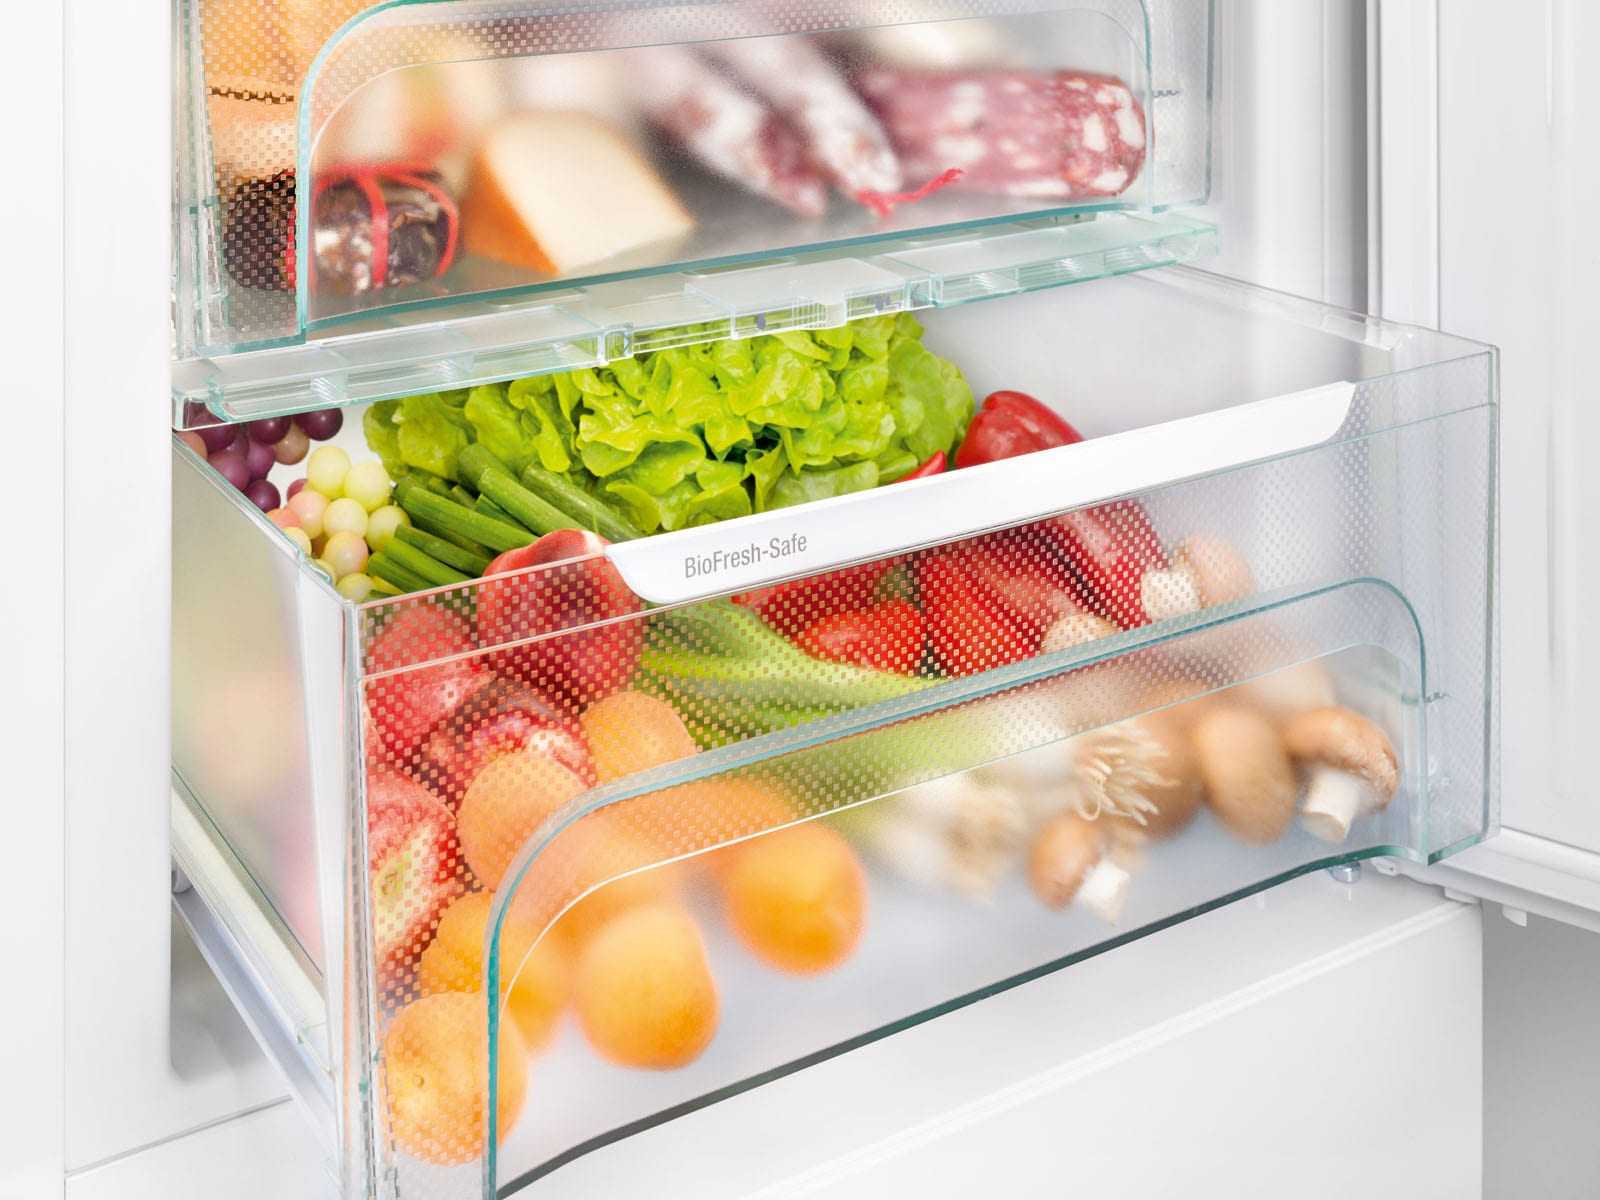 Ikb 3524 comfort biofresh встраиваемый холодильник с функцией biofresh - liebherr